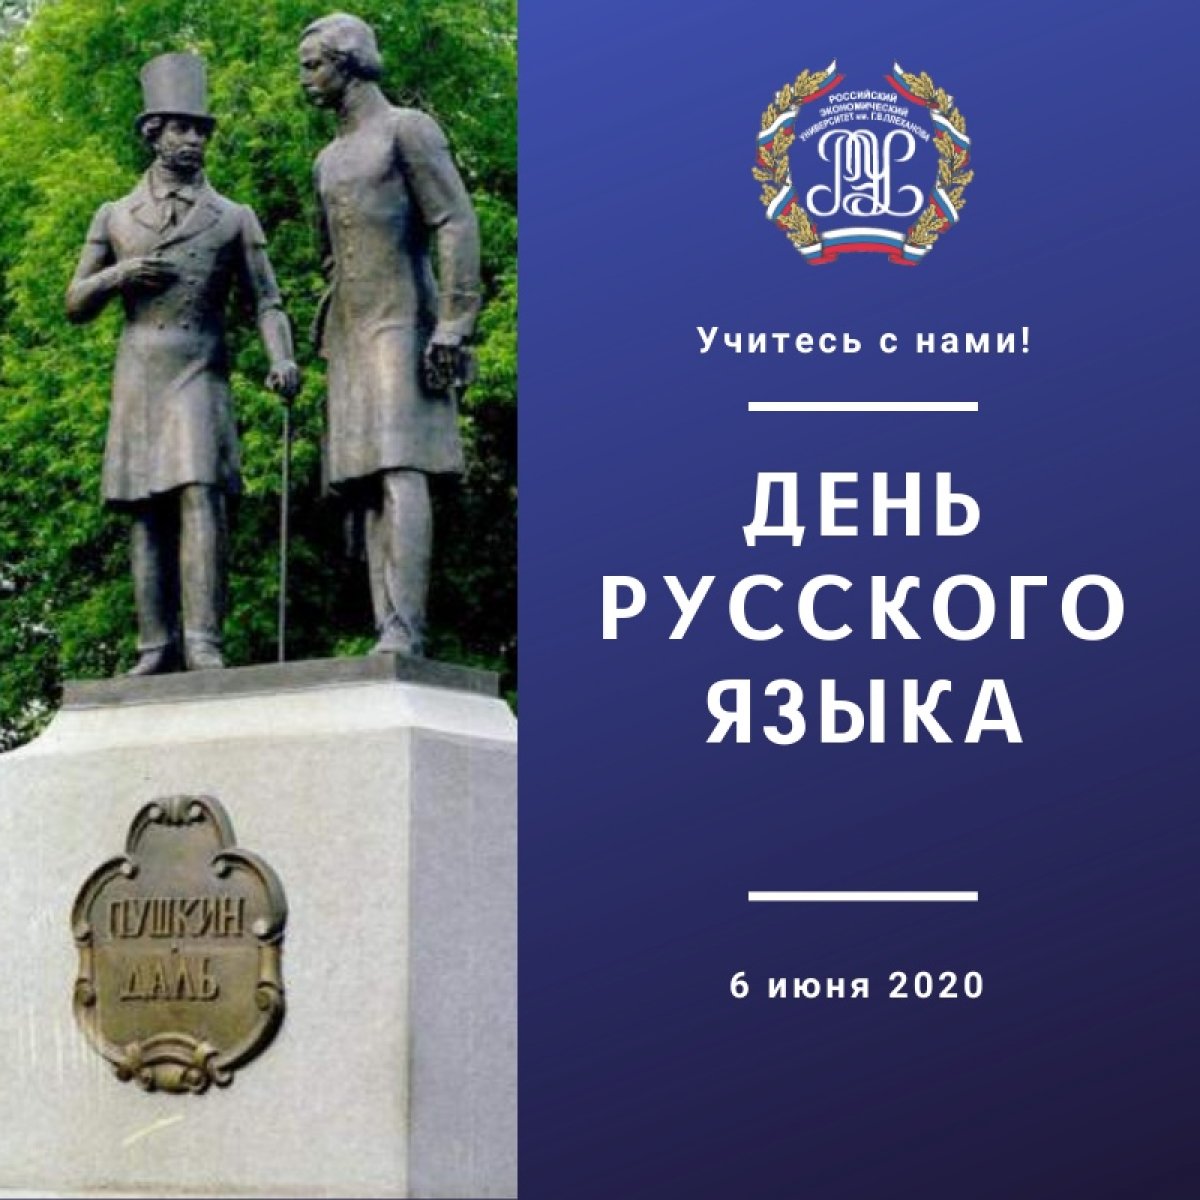 6 июня, в день рождения великого русского поэта А. С. Пушкина, отмечается международный День русского языка, учреждённый ООН в 2010 году. 📜